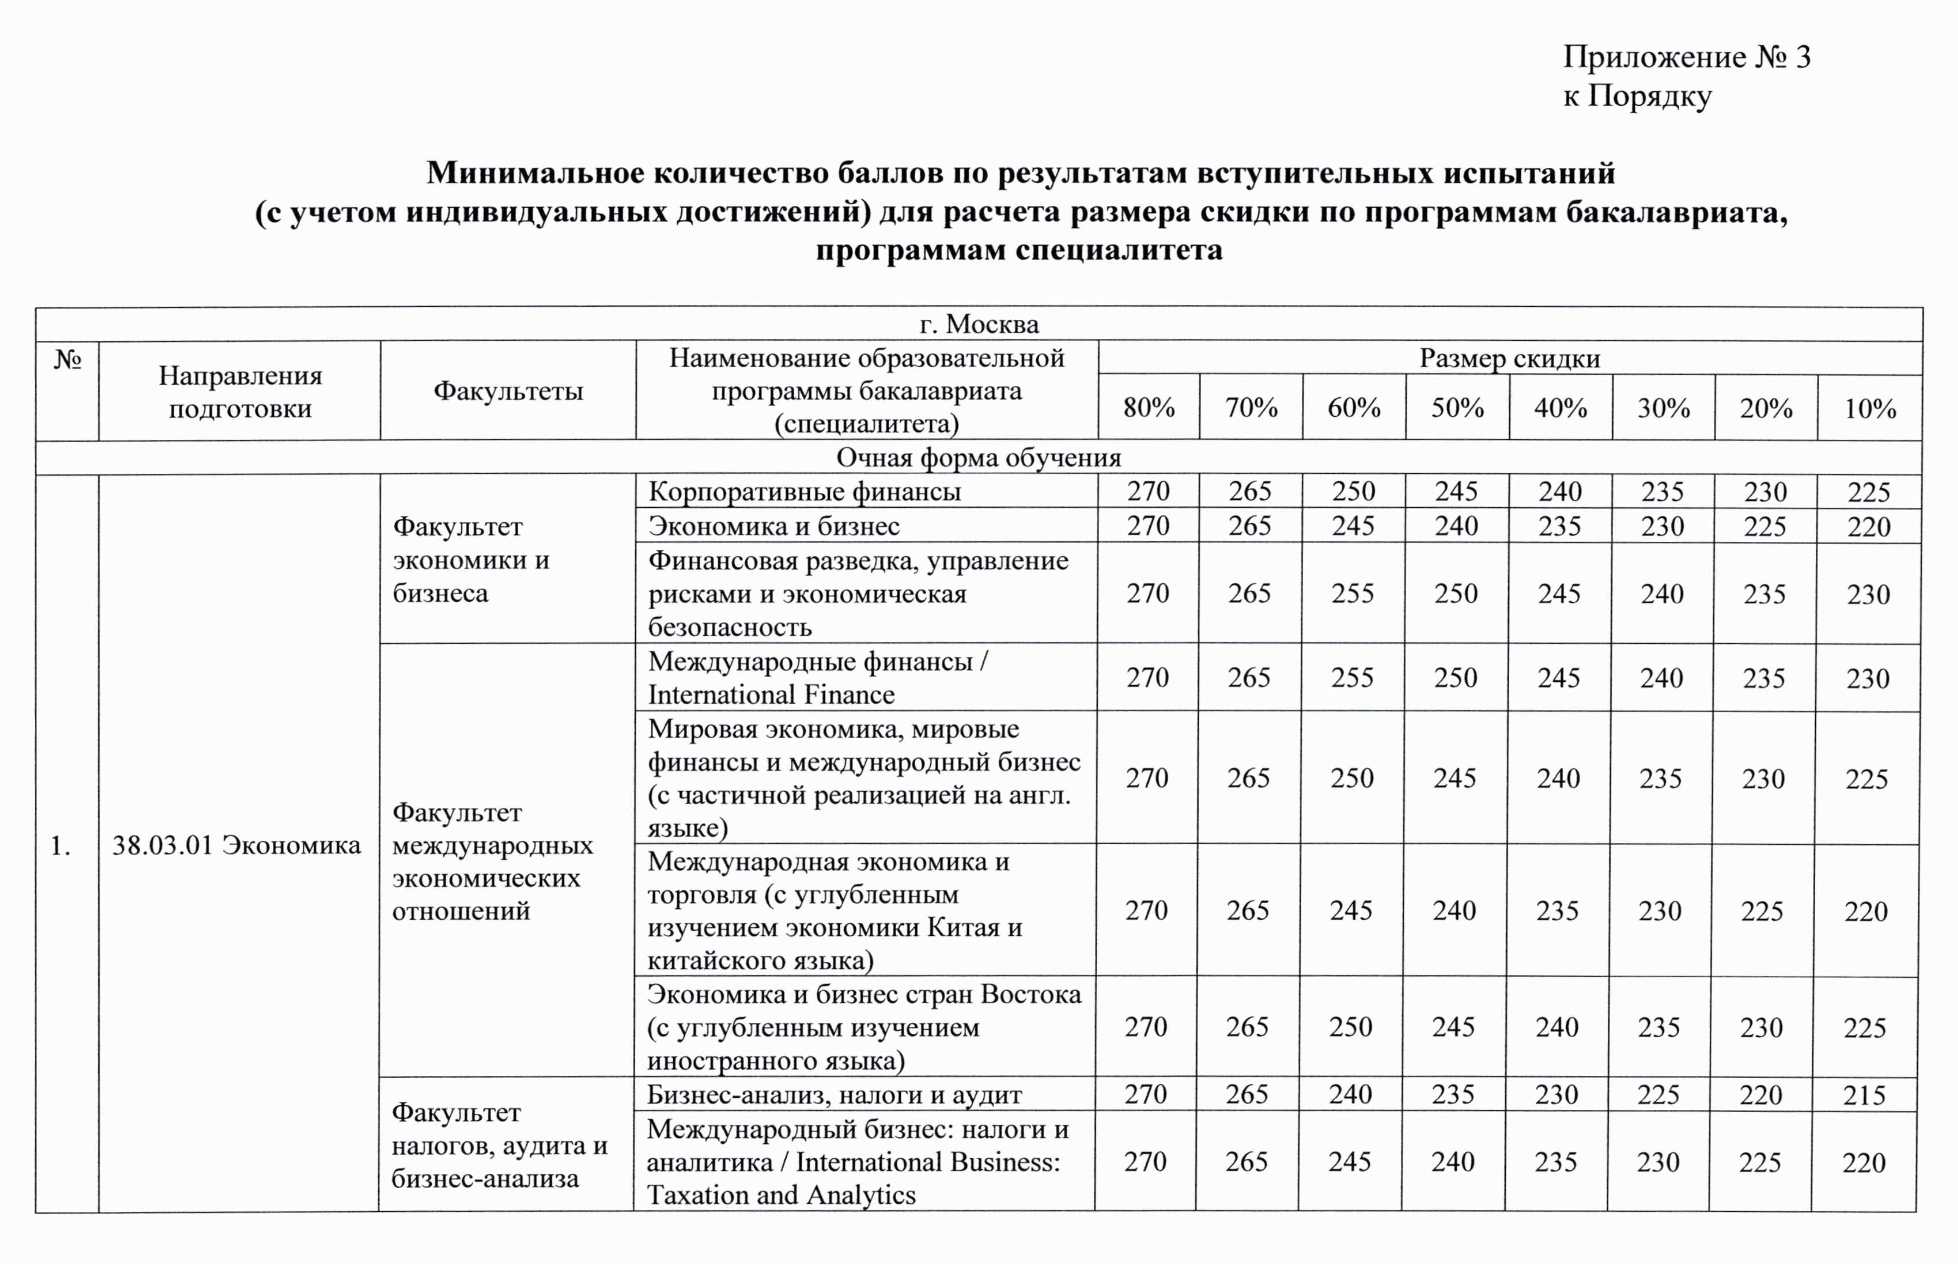 Пример дифференцированной скидки в Финансовом университете: чем больше сумма баллов ЕГЭ, тем больше скидка. Источник: fa.ru